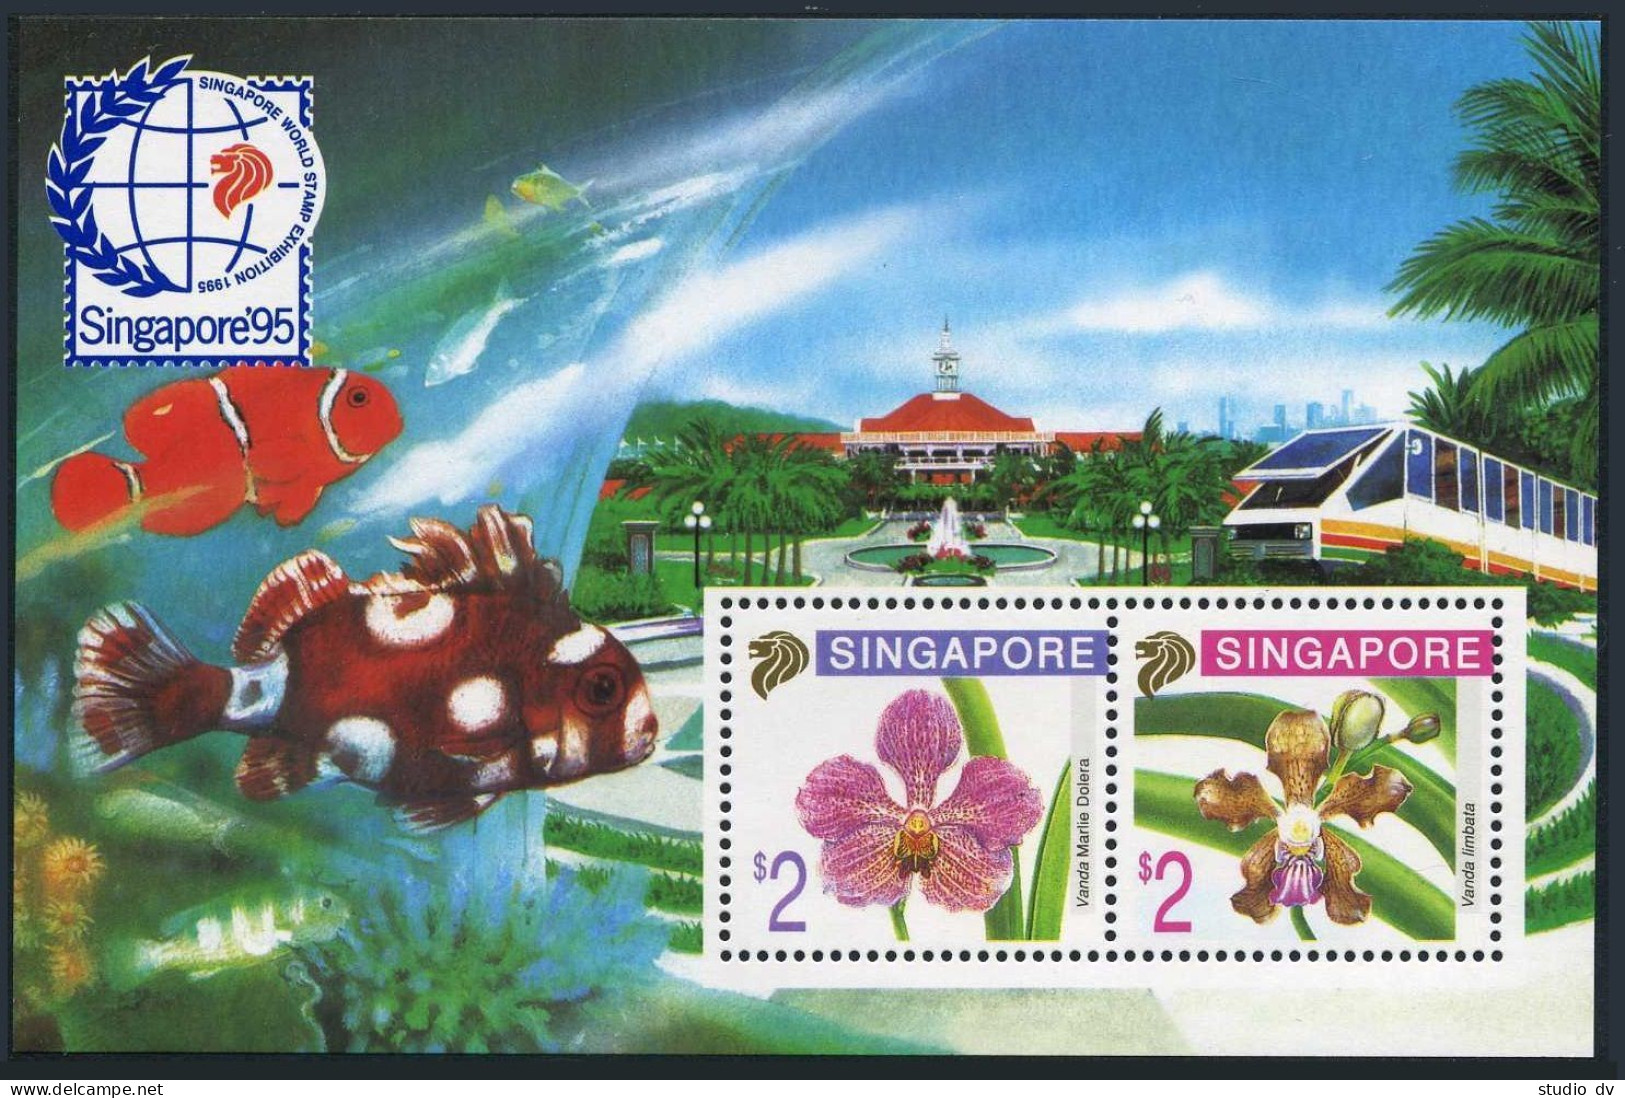 Singapore 717c Sheet, MNH. Michel 761A-762A Bl.35. SINGAPORE-1995. Orchids.Fish. - Singapour (1959-...)